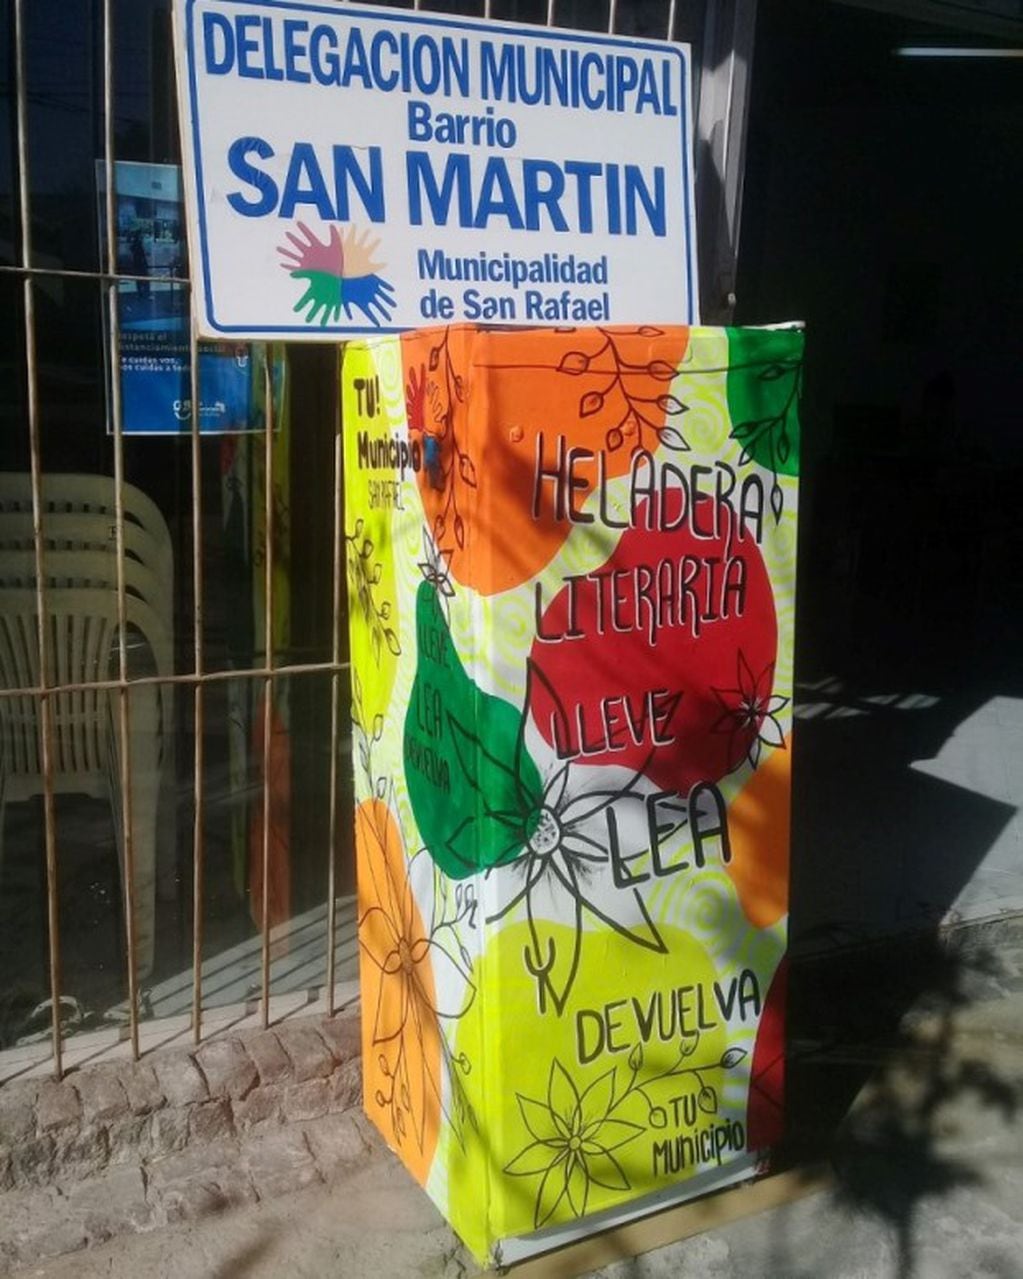 La heladera literia está en la vereda de la Delegación Municipal del barrio San Martín en San Rafael.